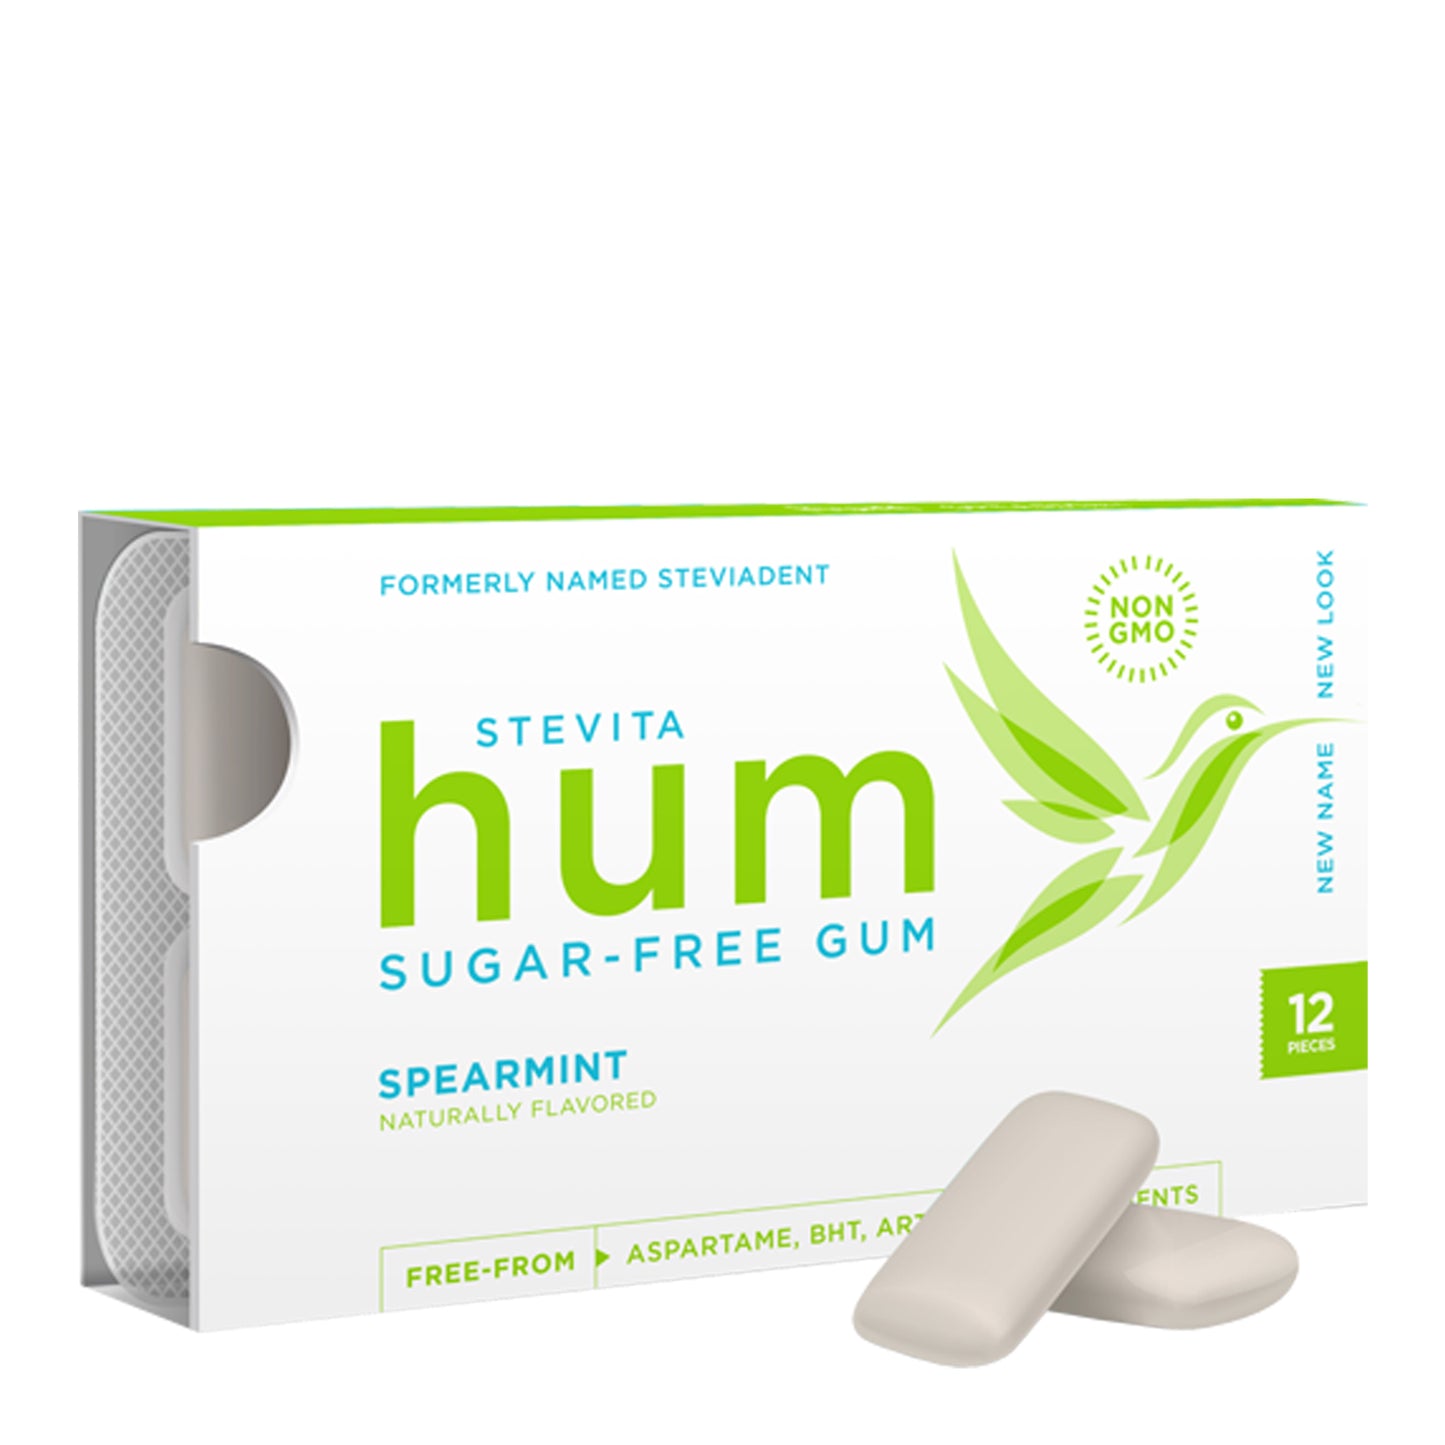 Stevita Hum Gum (formerly Steviadent)- Sugar-Free Gum - Natural Spearmint